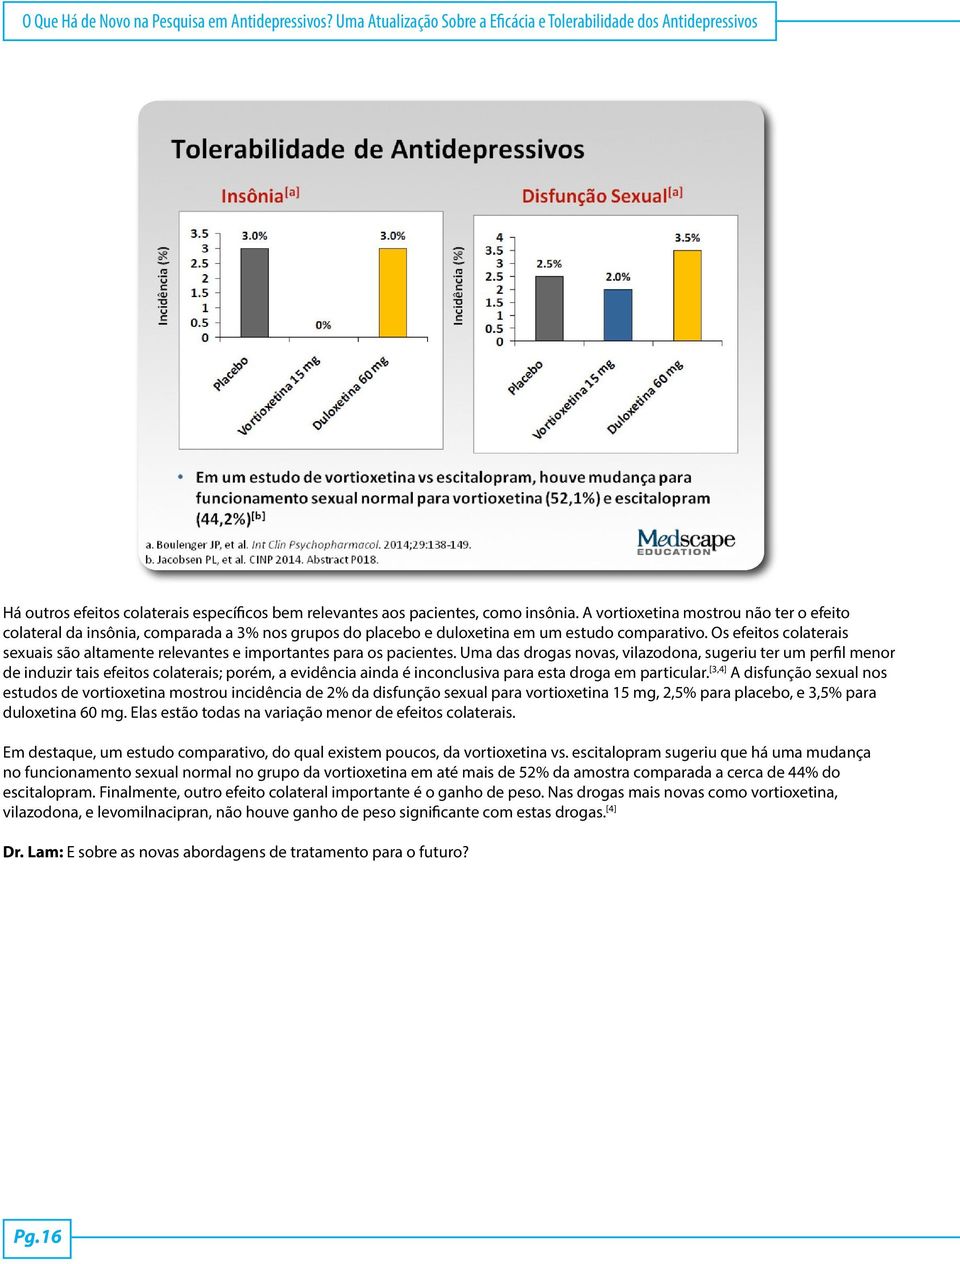 A vortioxetina mostrou não ter o efeito colateral da insônia, comparada a 3% nos grupos do placebo e duloxetina em um estudo comparativo.